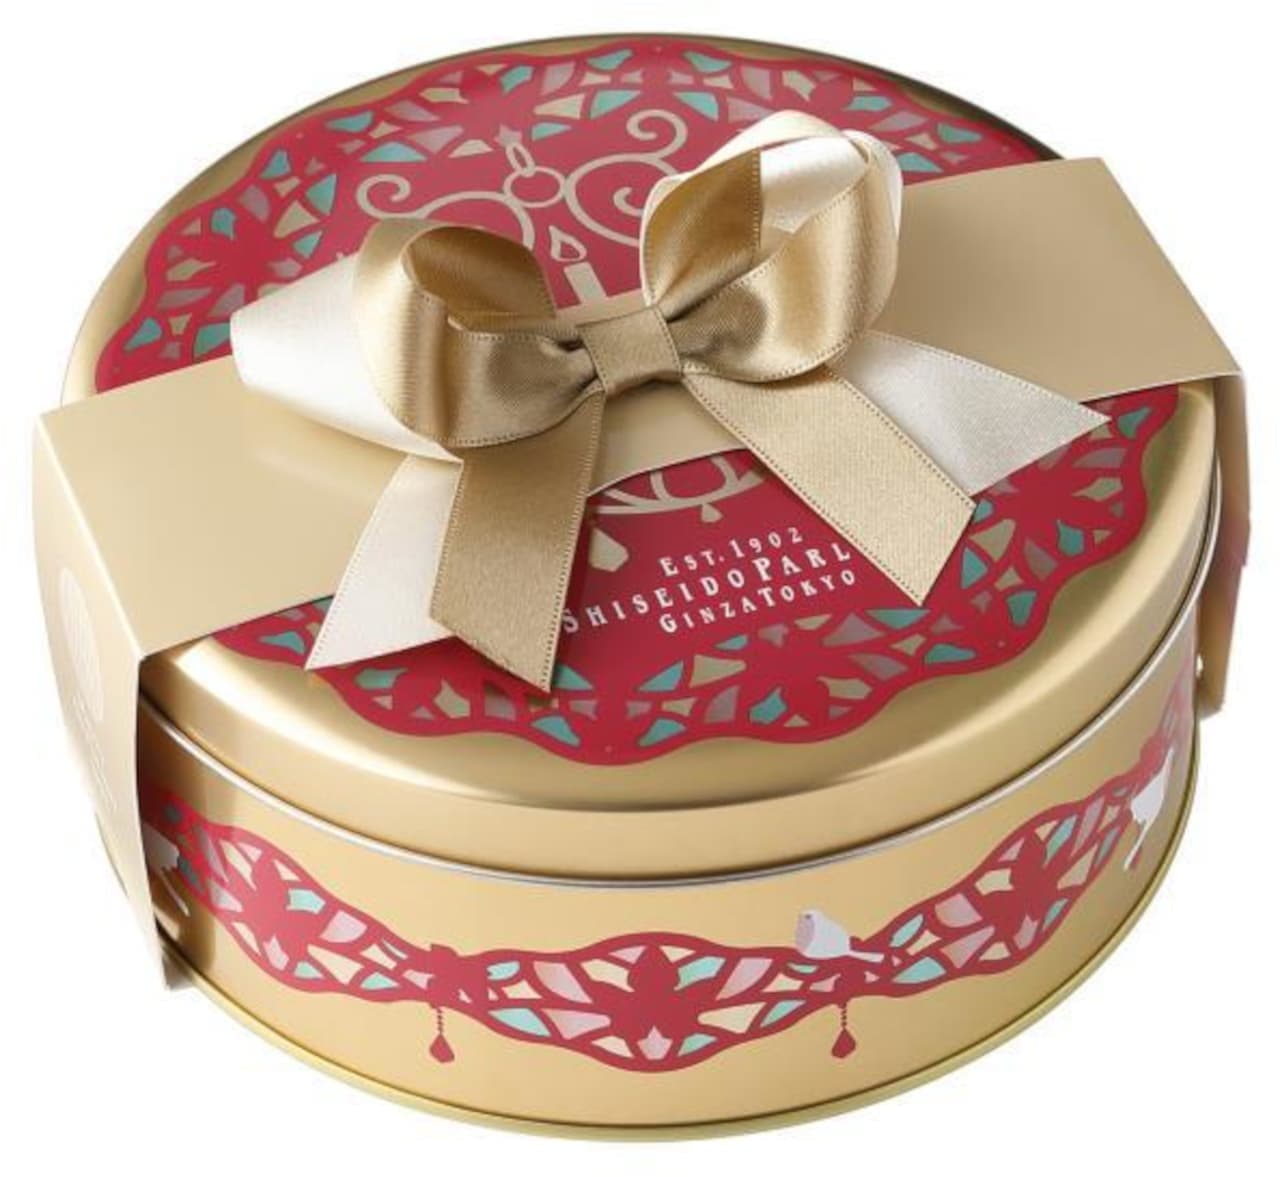 Shiseido Parlor "Christmas sweets 14 pieces